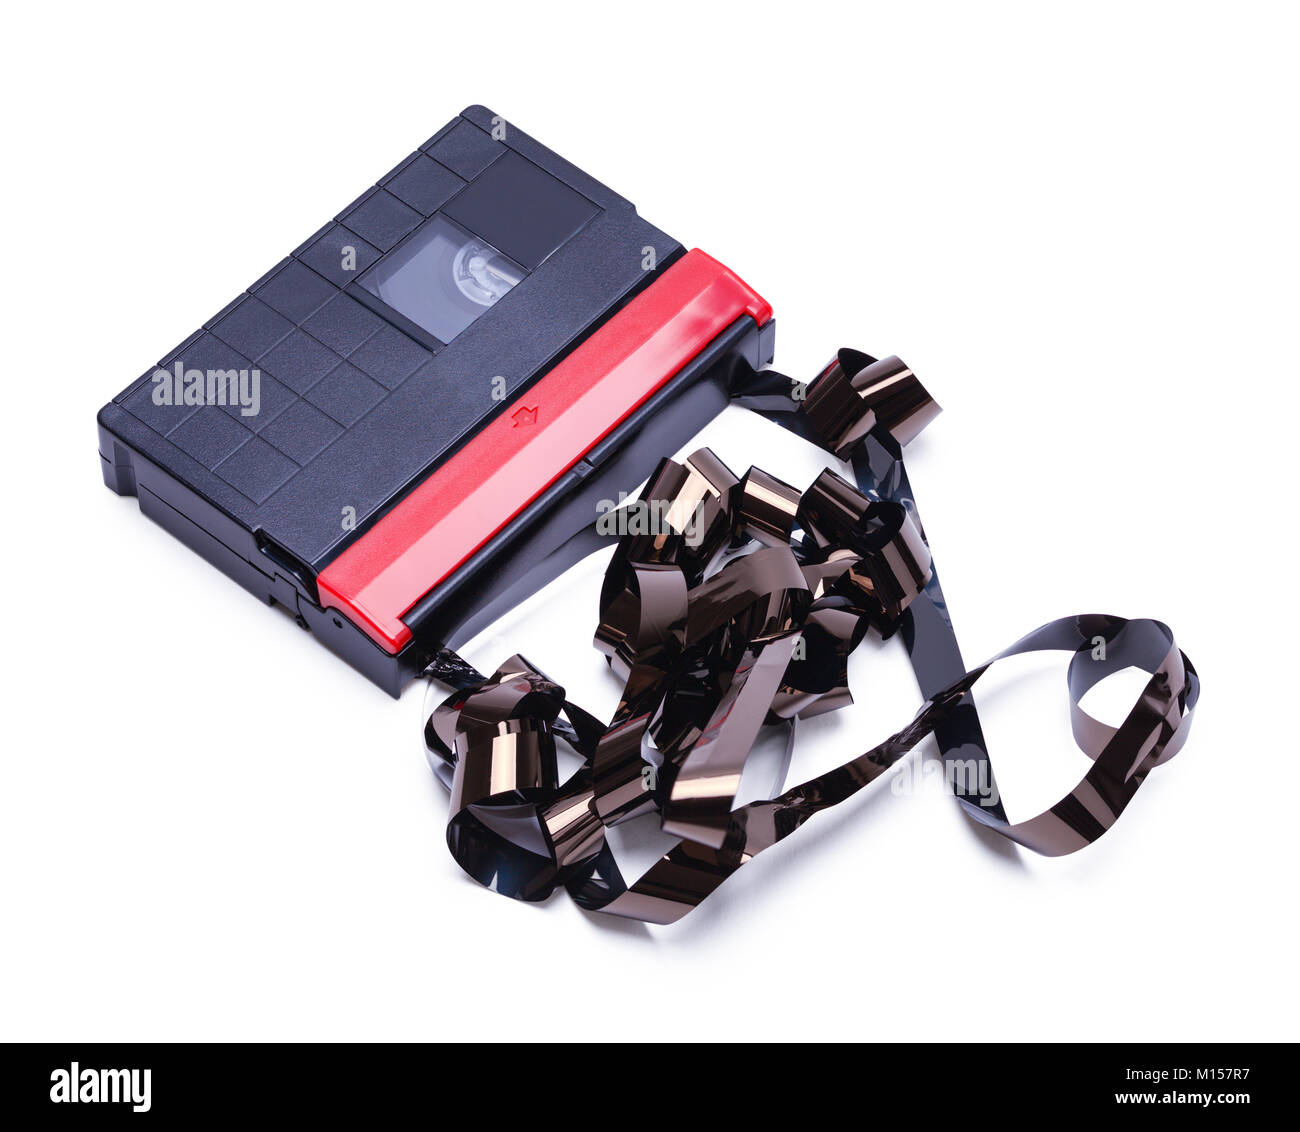 Il nastro per videocassette per la casa Macchina fotografica del film svolto e le rotture isolate su uno sfondo bianco. Foto Stock